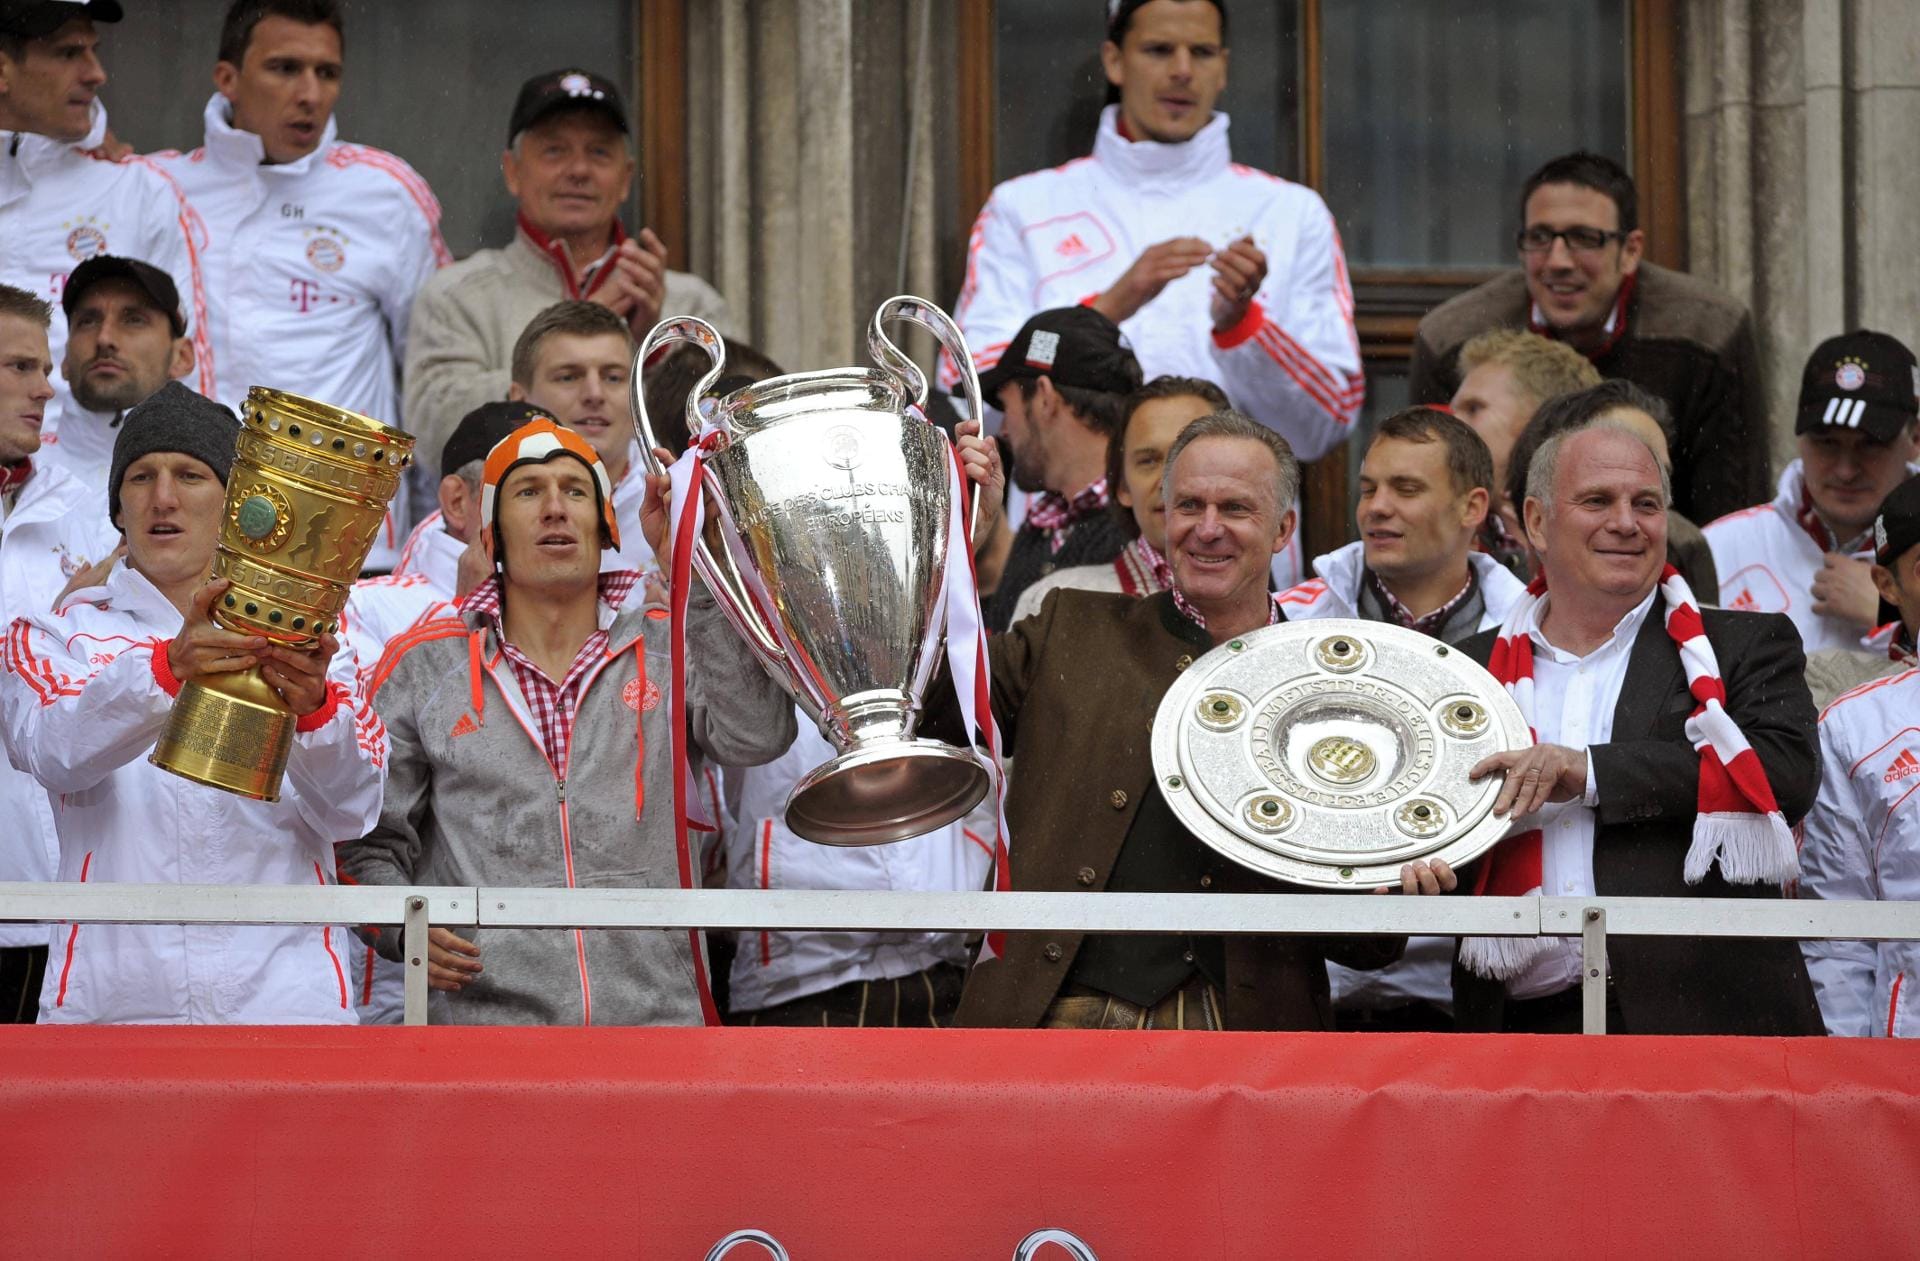 2013 die Krönung im Vereinsfußball: Schweinsteiger holt mit dem FC Bayern das Triple aus Champions League, Meisterschaft und DFB-Pokal.